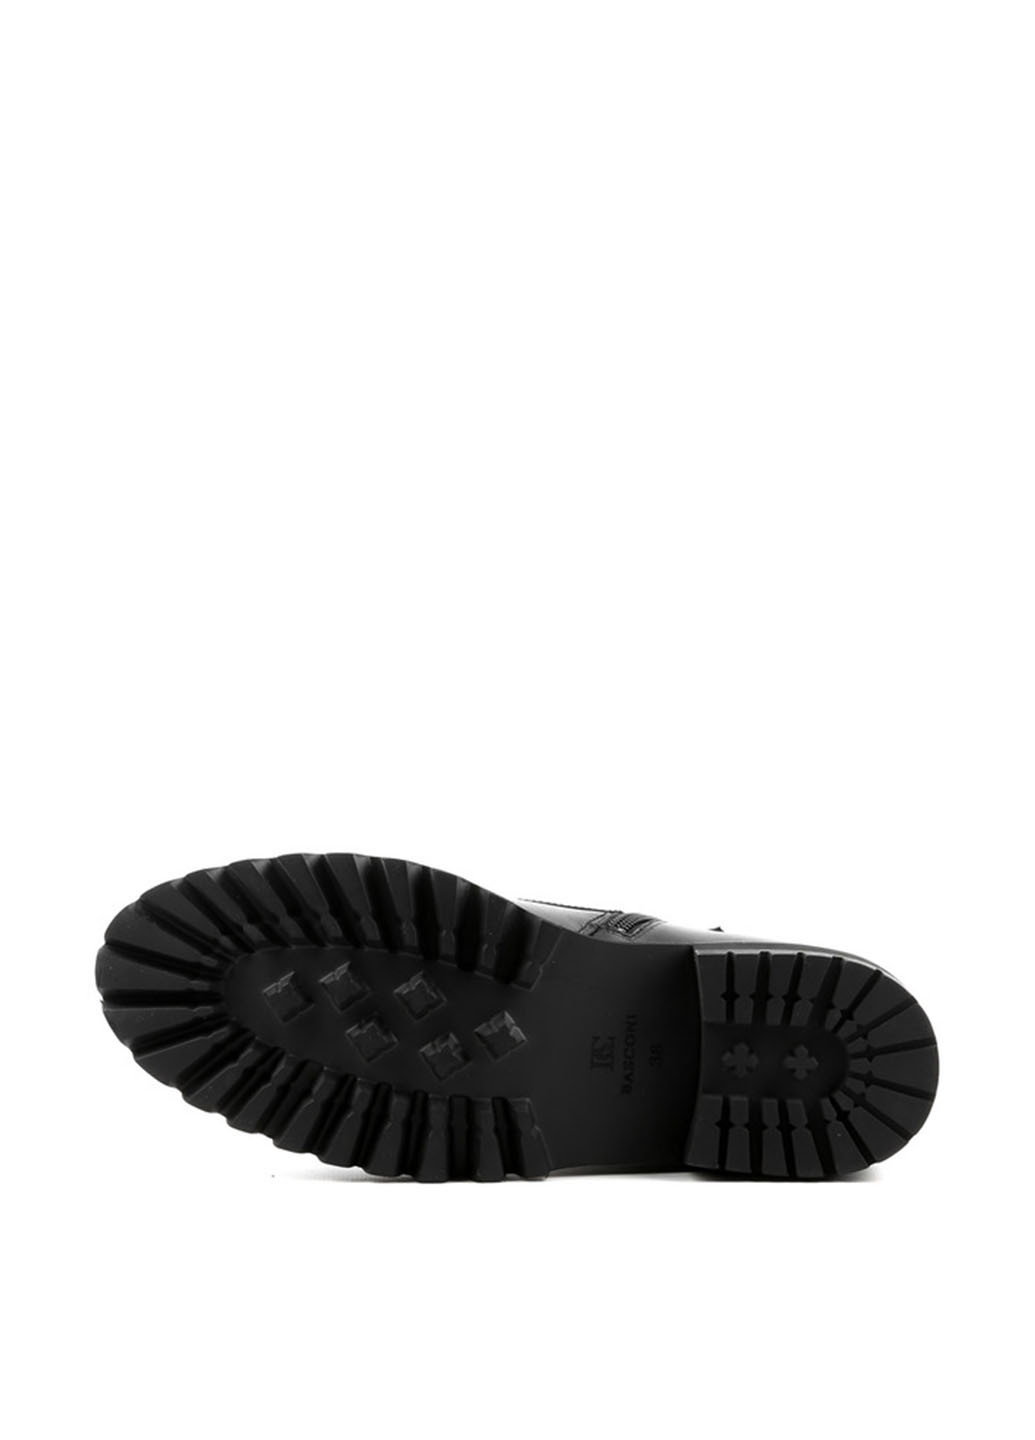 Зимние ботинки Basconi со шнуровкой, с металлическими вставками